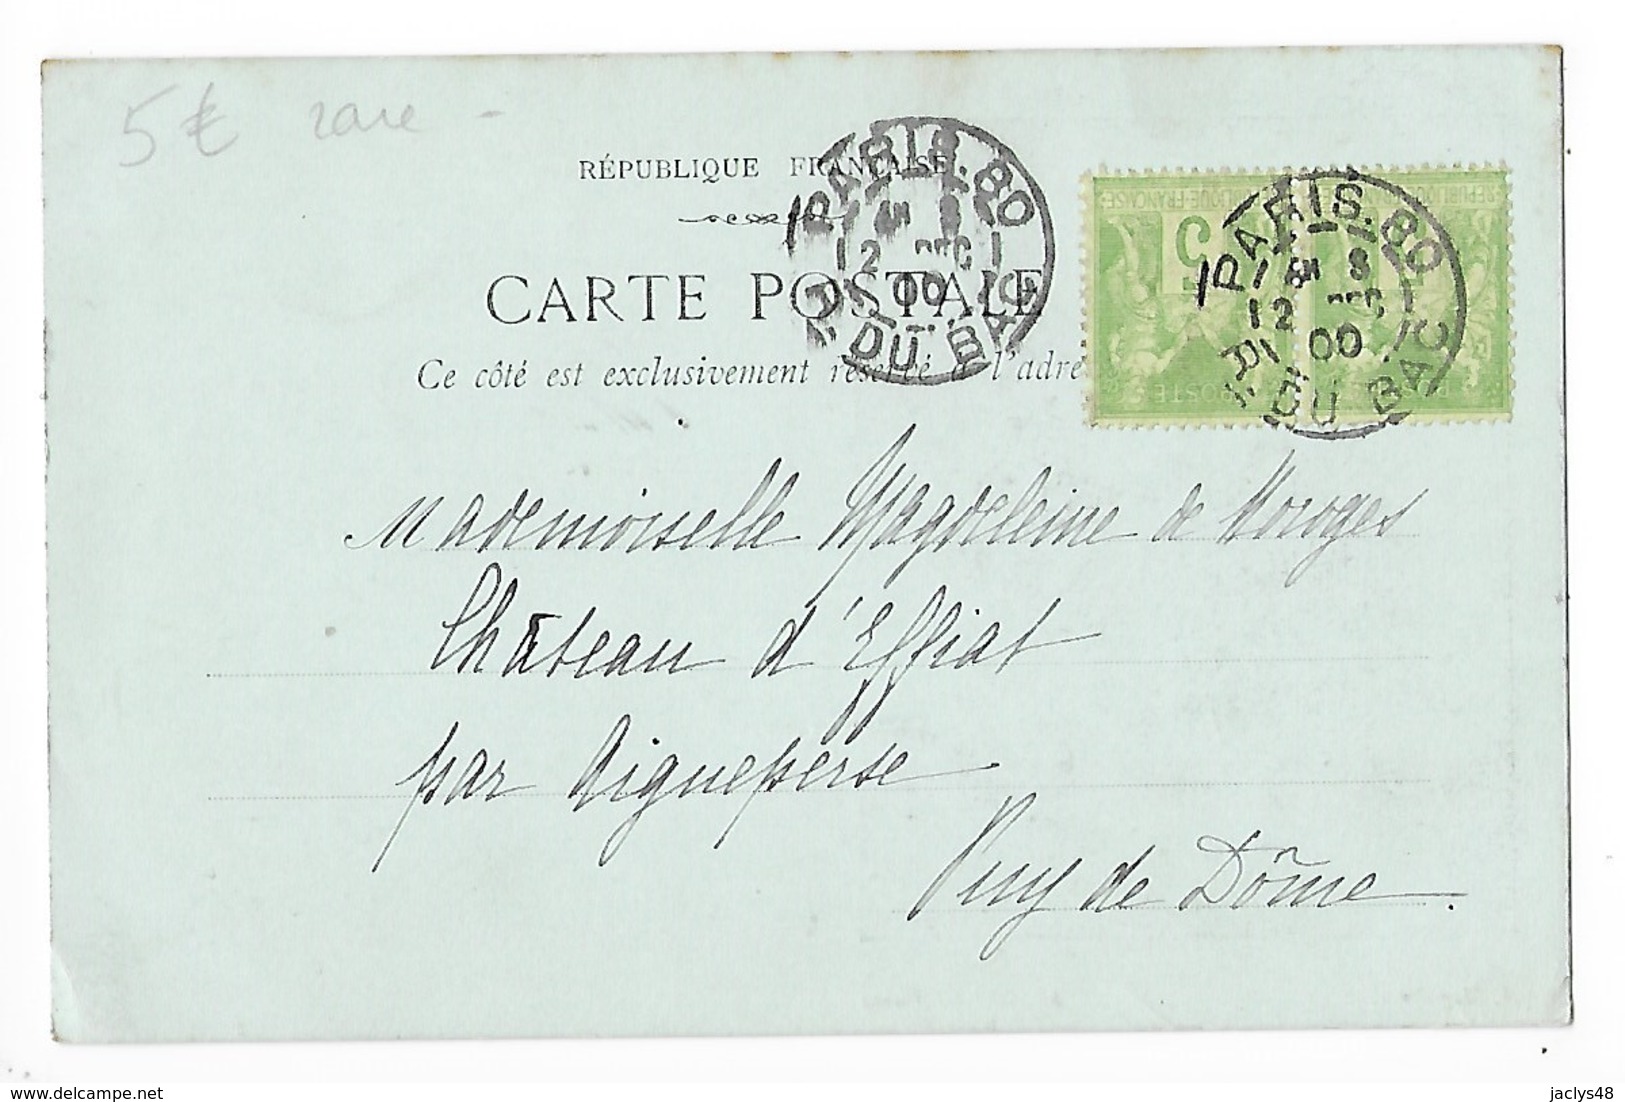 HONNEUR AU PRESIDENT KRÜGER Carte Pionniére Fond Vert Année 1900   -  F 1 - Personnages